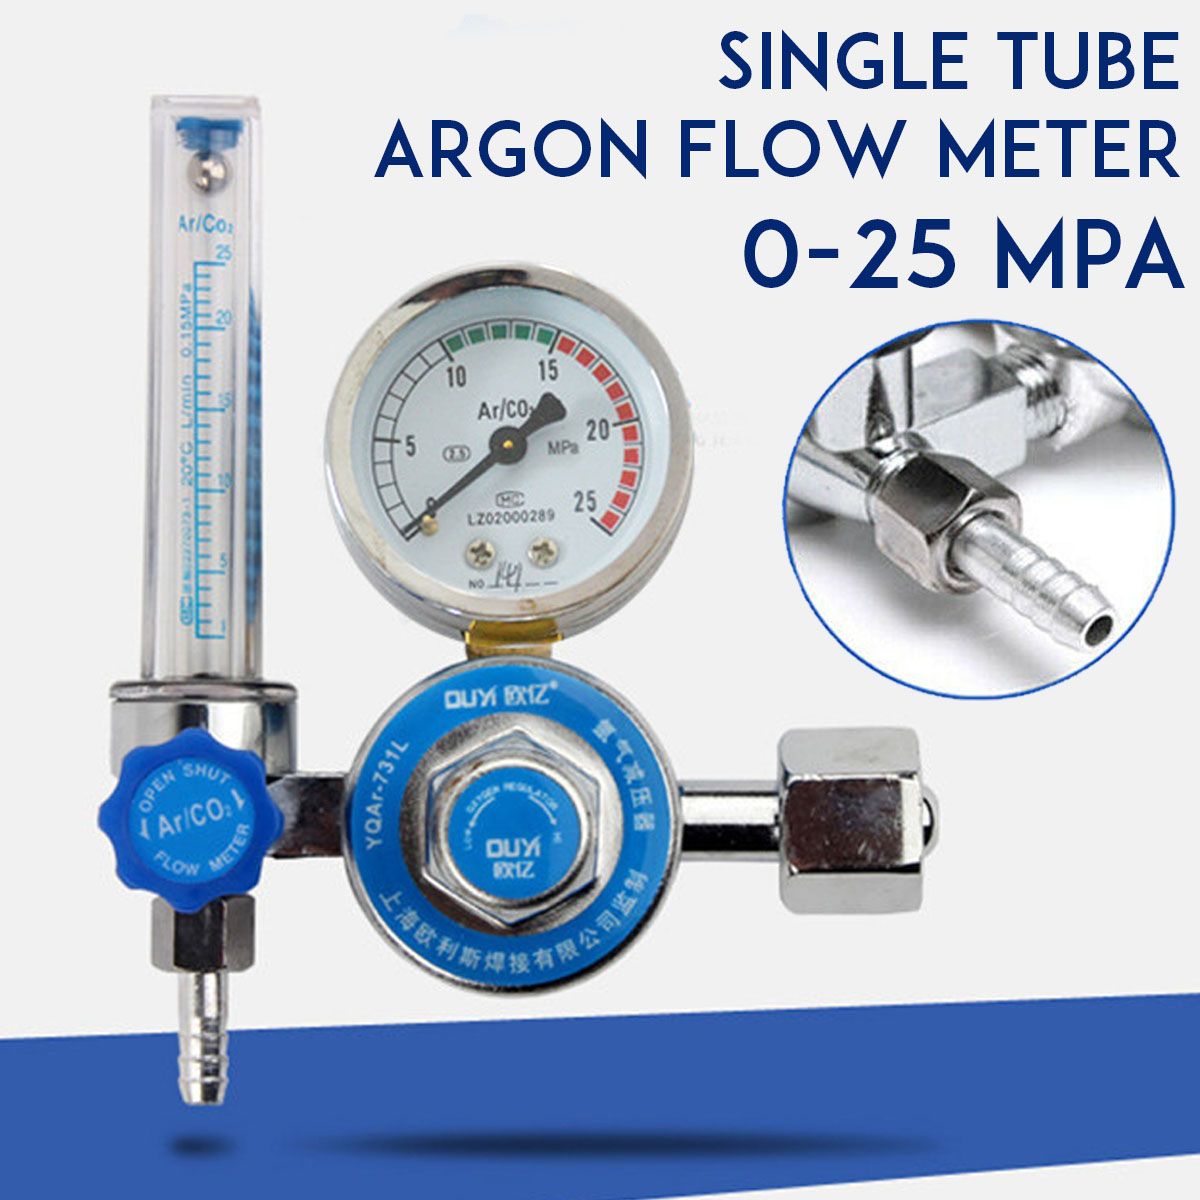 Argon-CO2-Gas-Mig-Tig-Flow-Meter-Welding-Weld-Regulator-Gauge-Welder-0-25MPa-1705818